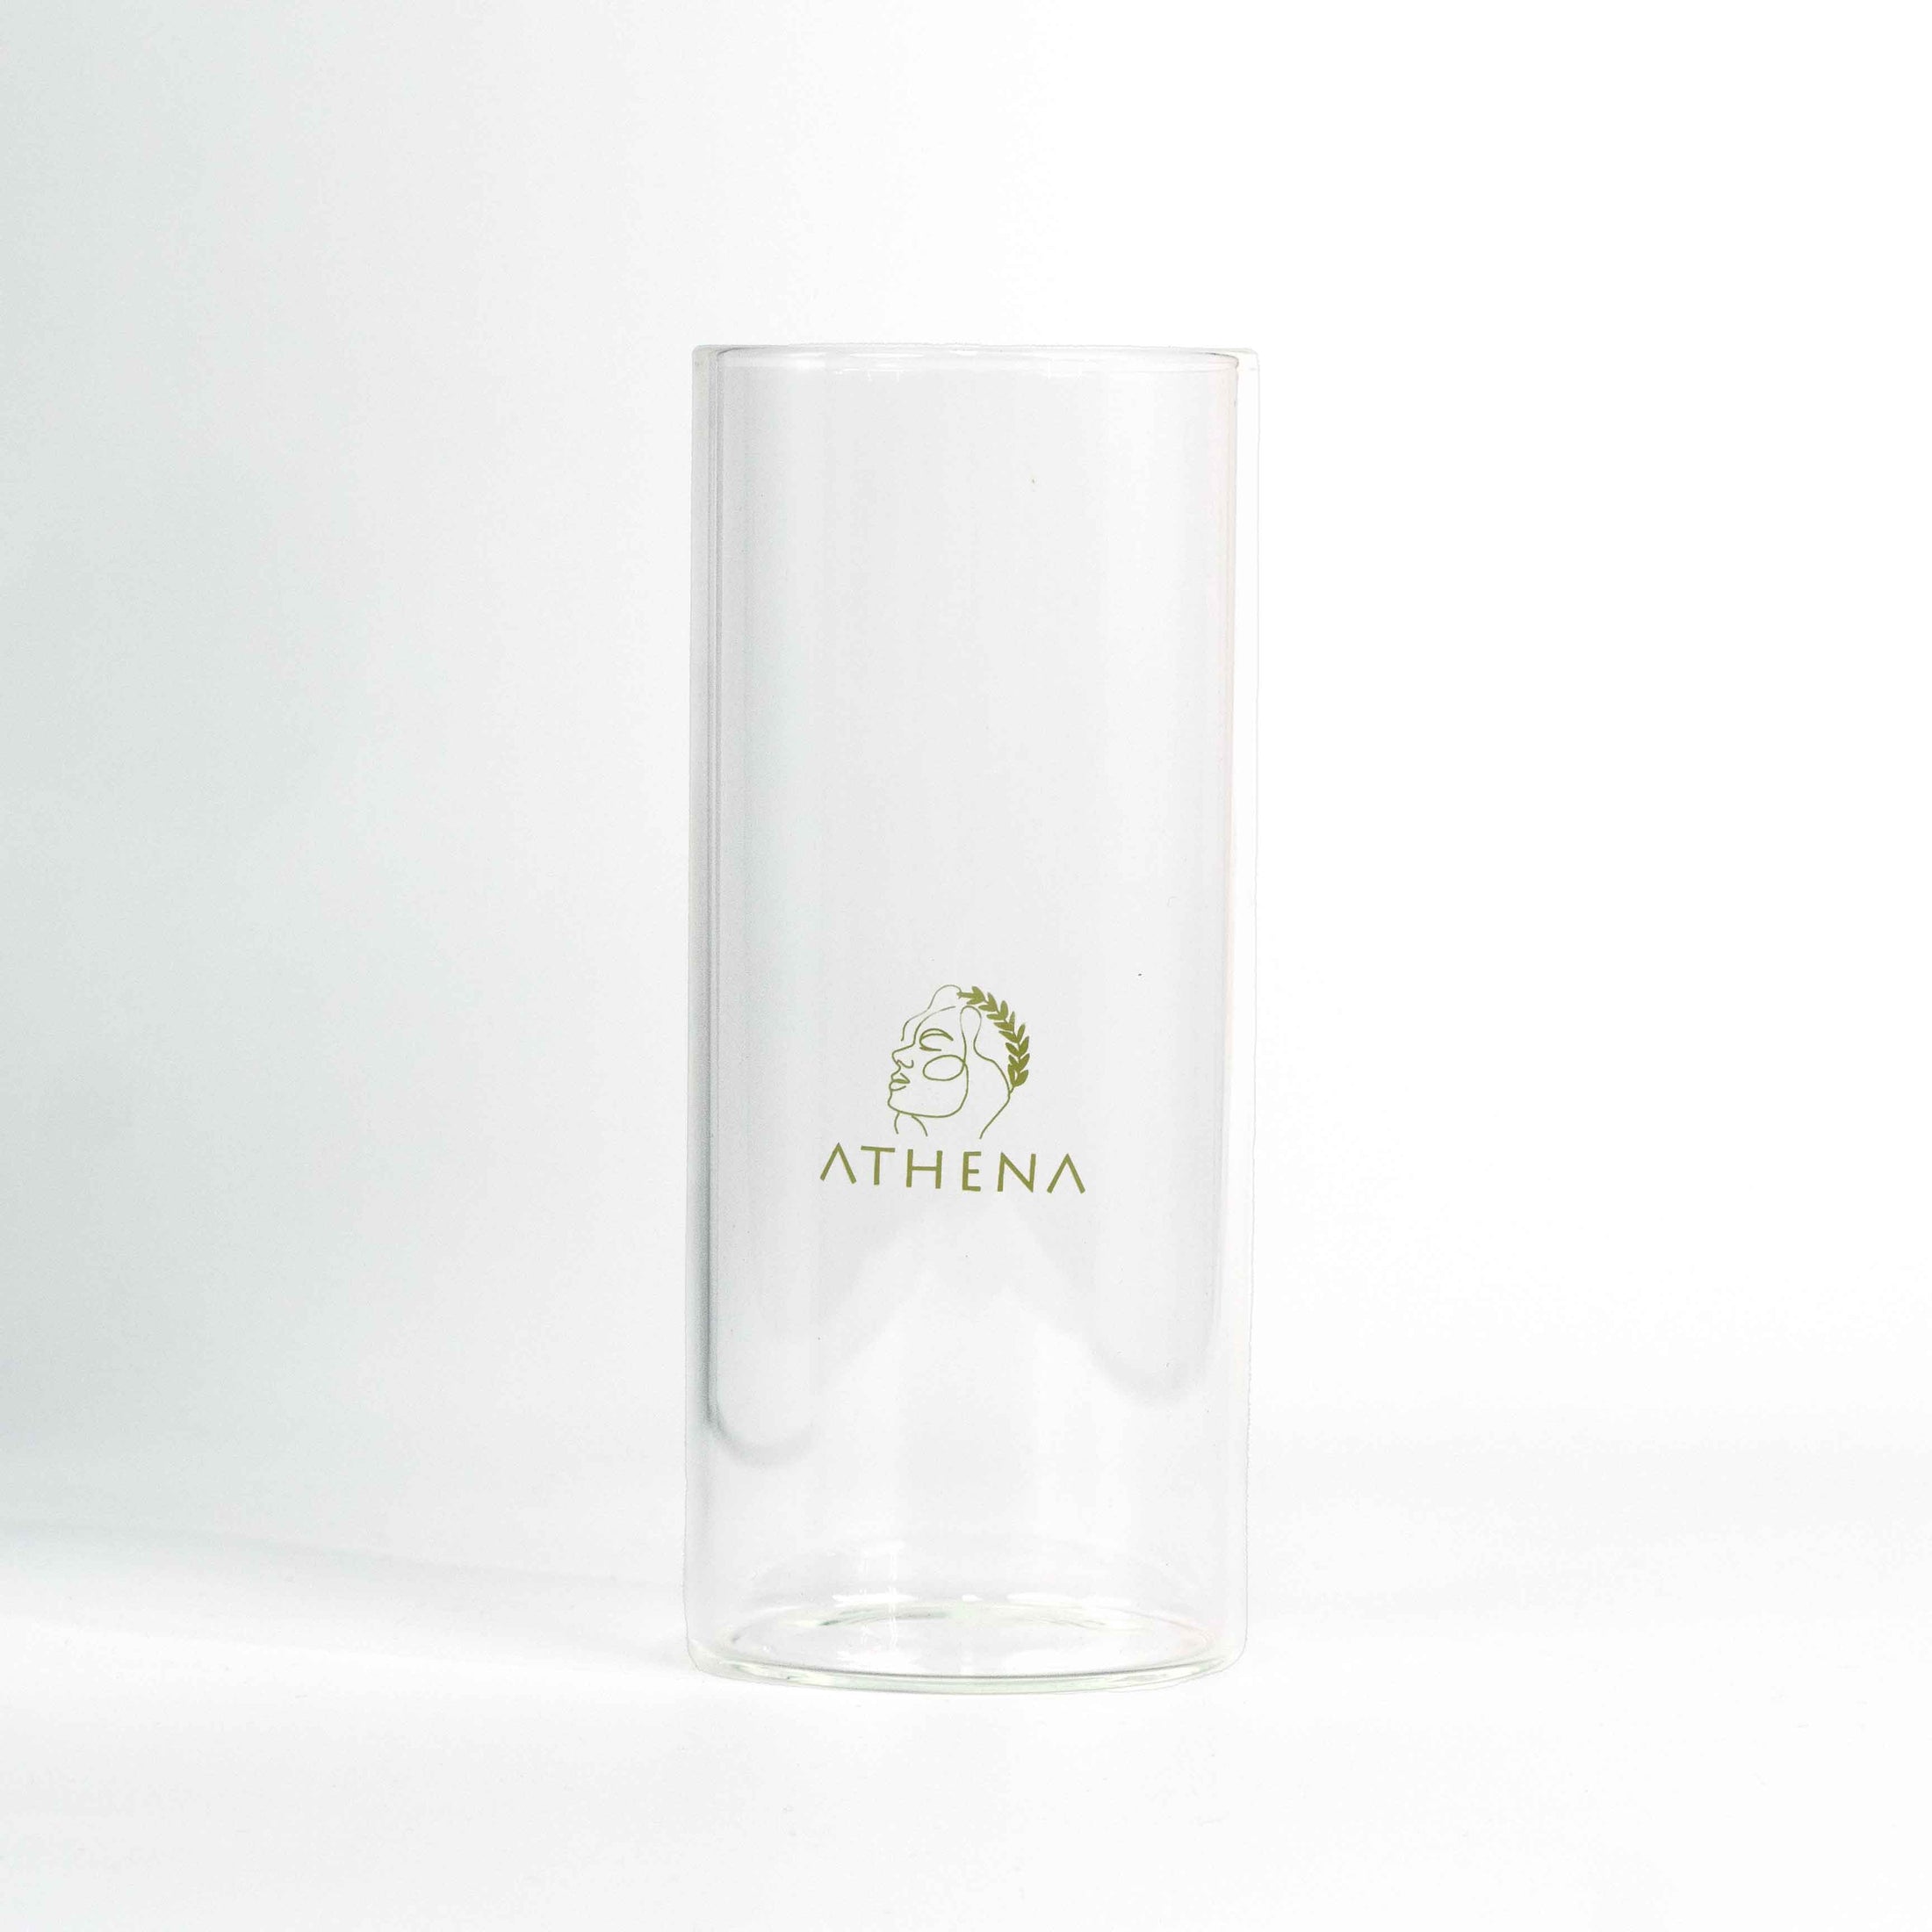 Athena Glass Tumbler